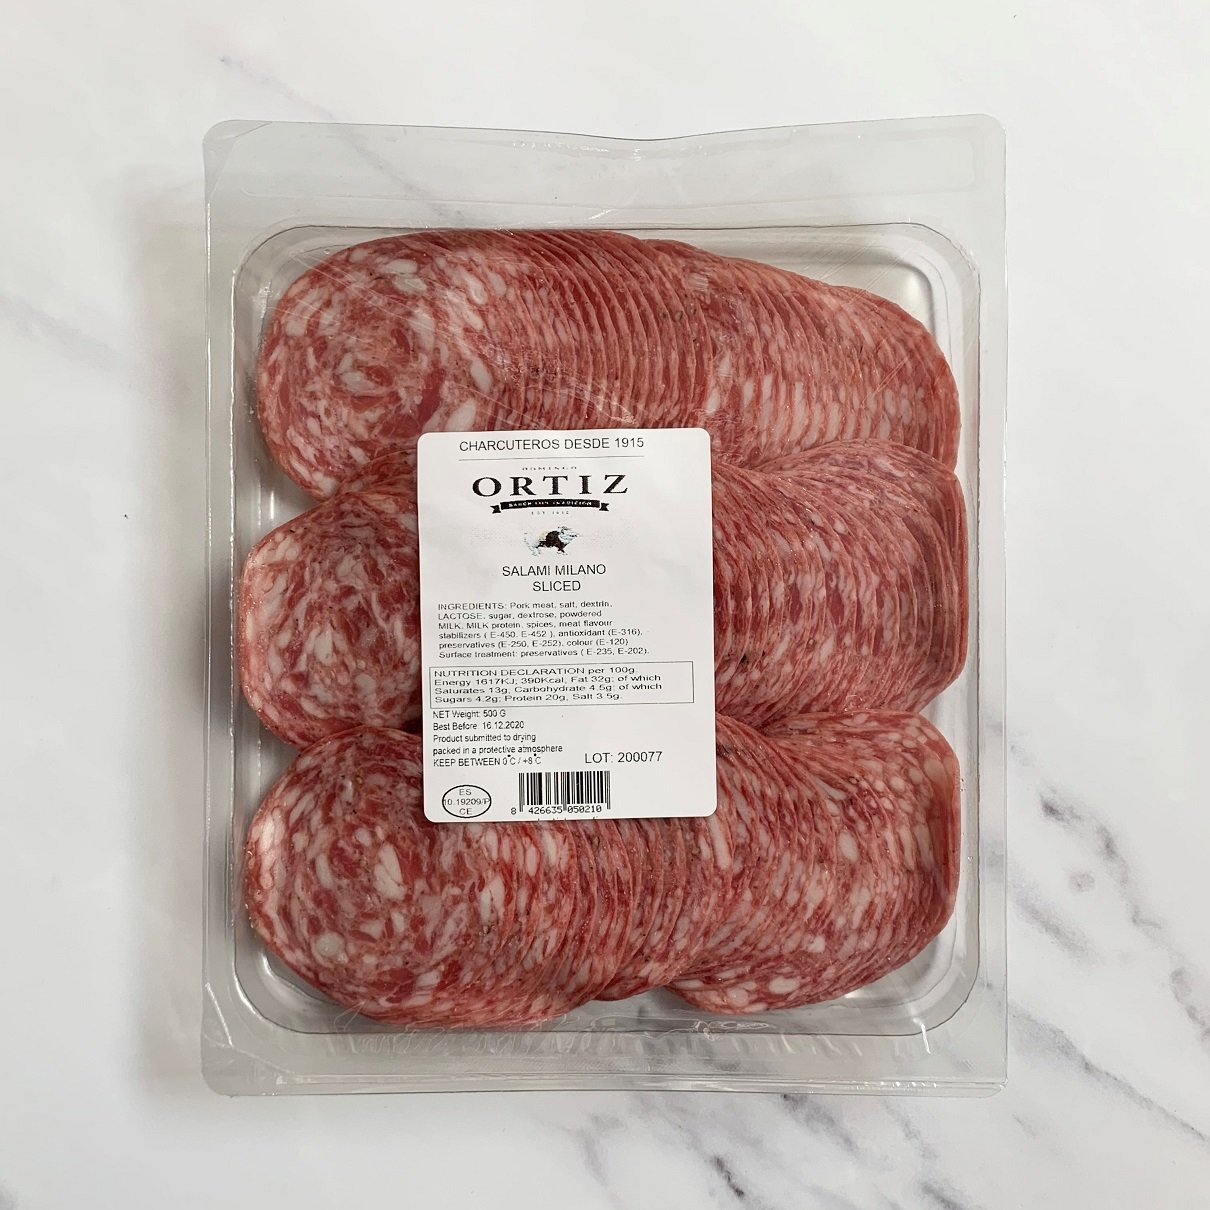 Ortiz Sliced Salami Milano – 500g